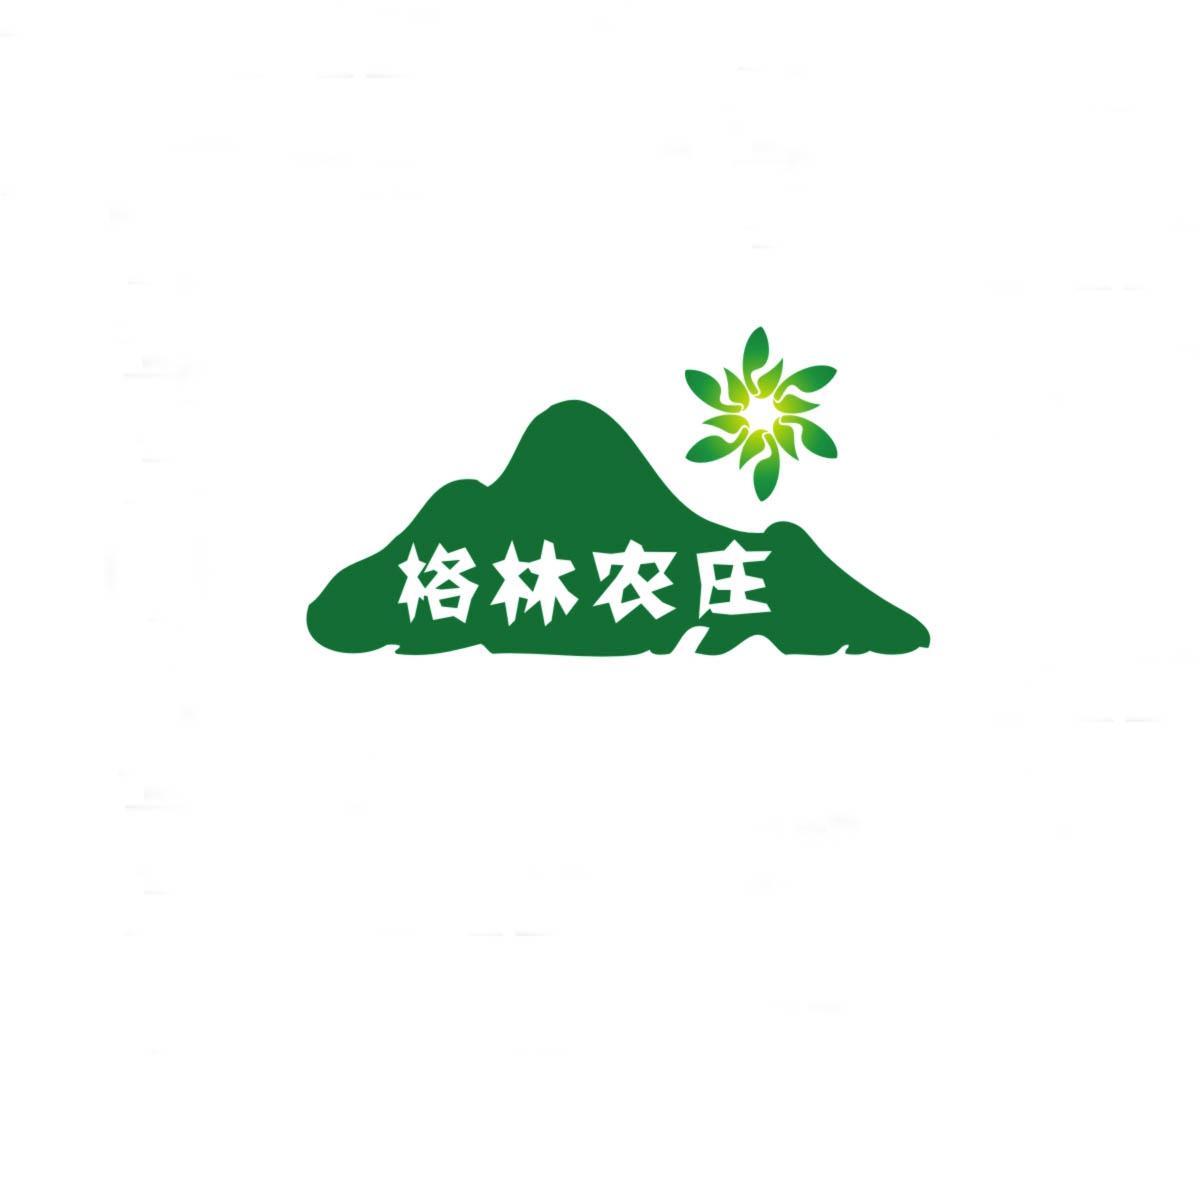 茶;申请人:宜昌格林生态农业开发有限公司代理机构:湖北智翔商标事务